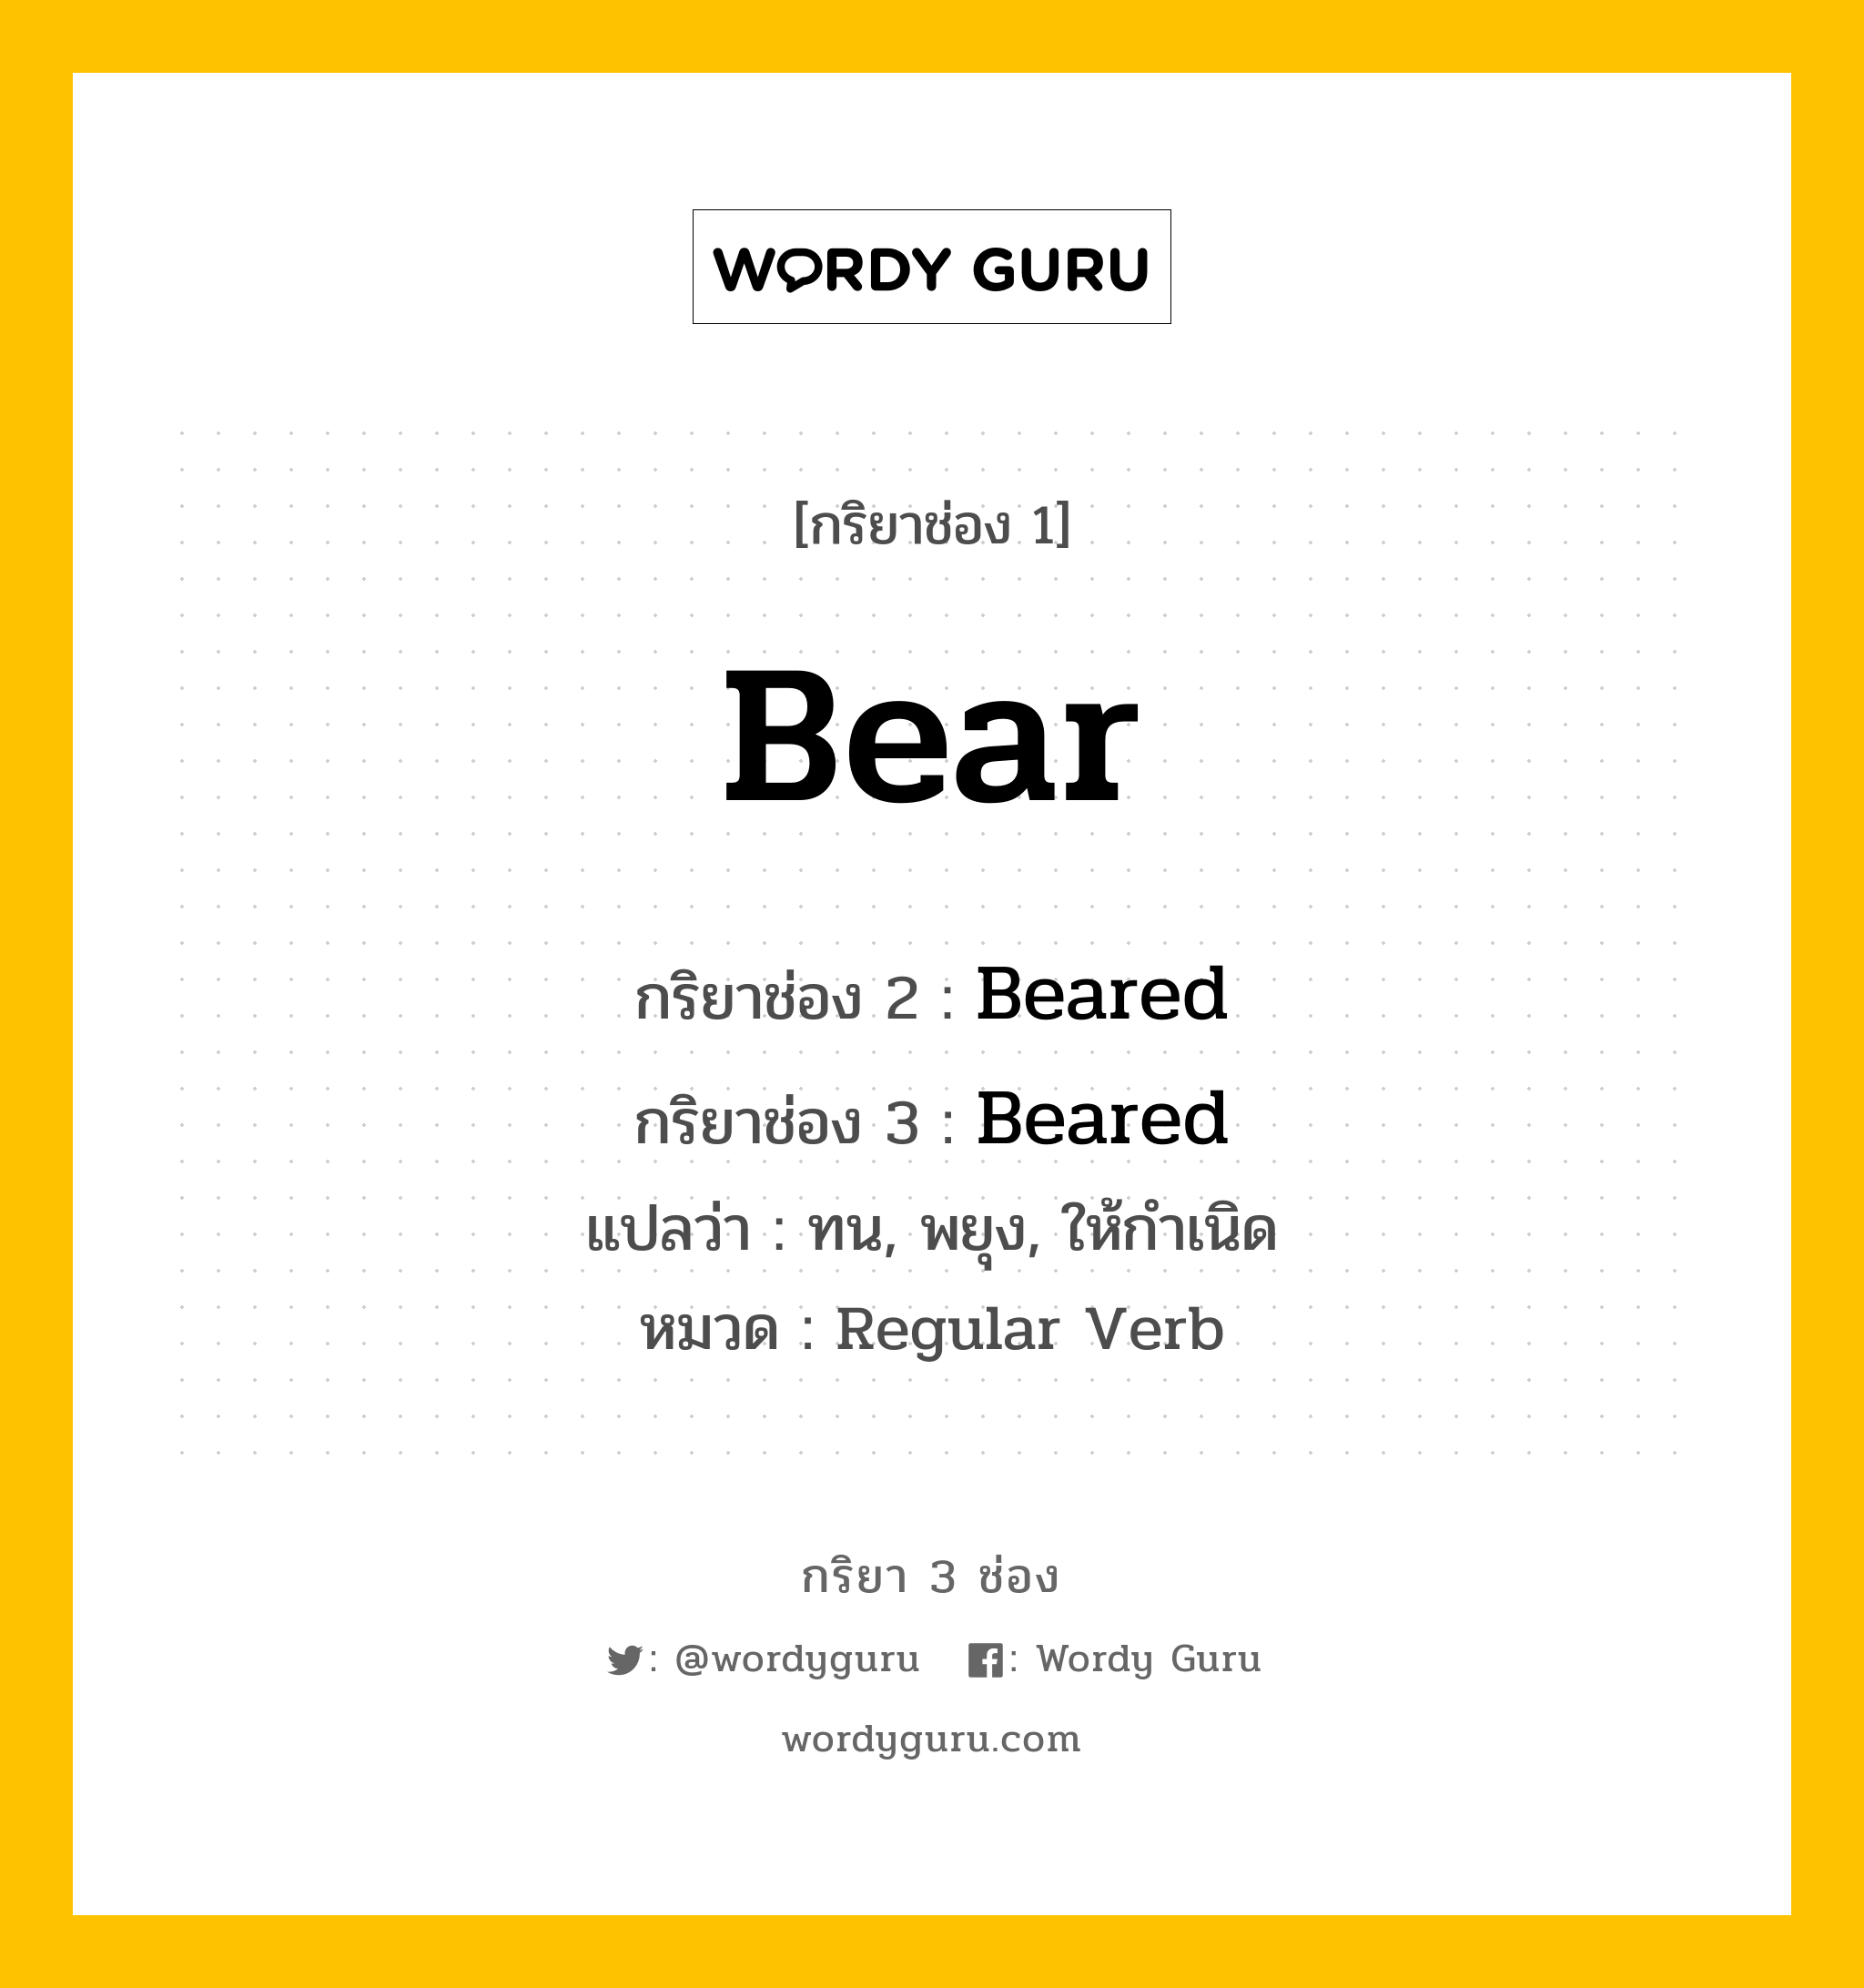 กริยา 3 ช่อง: Bear ช่อง 2 Bear ช่อง 3 คืออะไร, กริยาช่อง 1 Bear กริยาช่อง 2 Beared กริยาช่อง 3 Beared แปลว่า ทน, พยุง, ให้กำเนิด หมวด Regular Verb มีหลายแบบ y หมวด Regular Verb